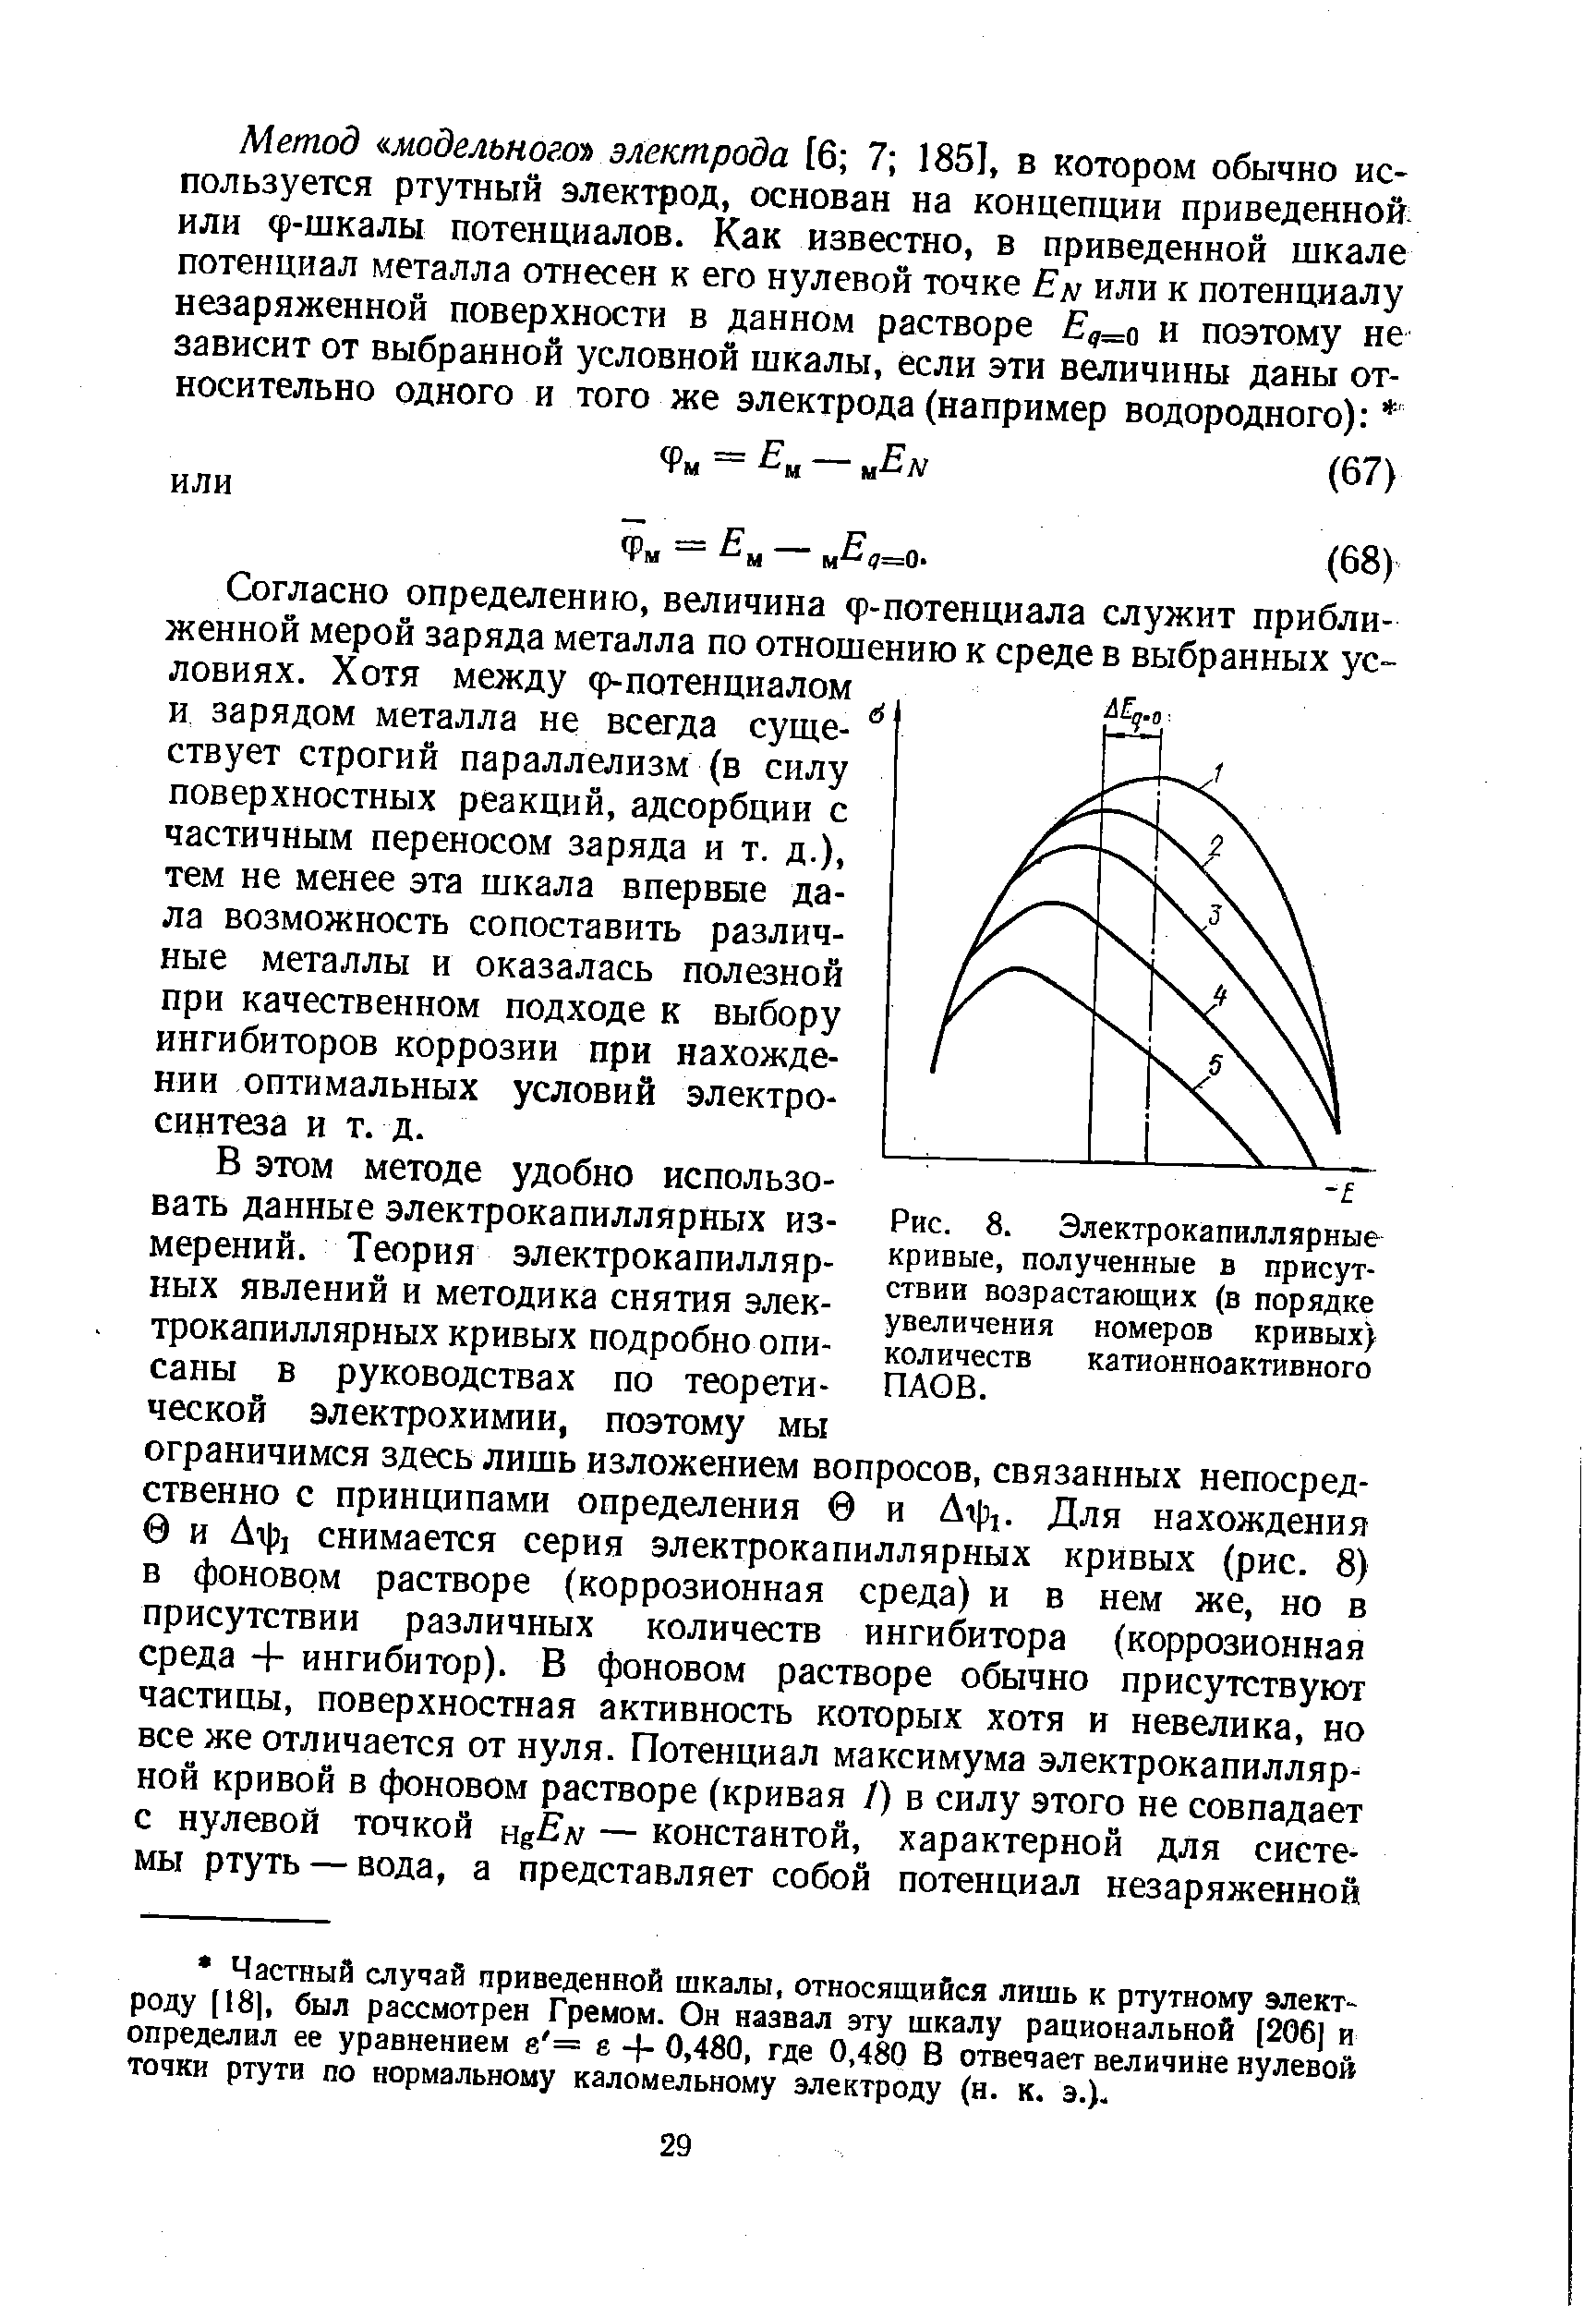 Рис. 8. Электрокапиллярные кривые, полученные в присутствии возрастающих (в порядке увеличения номеров кривых) количеств катионноактивного ПАОВ.
